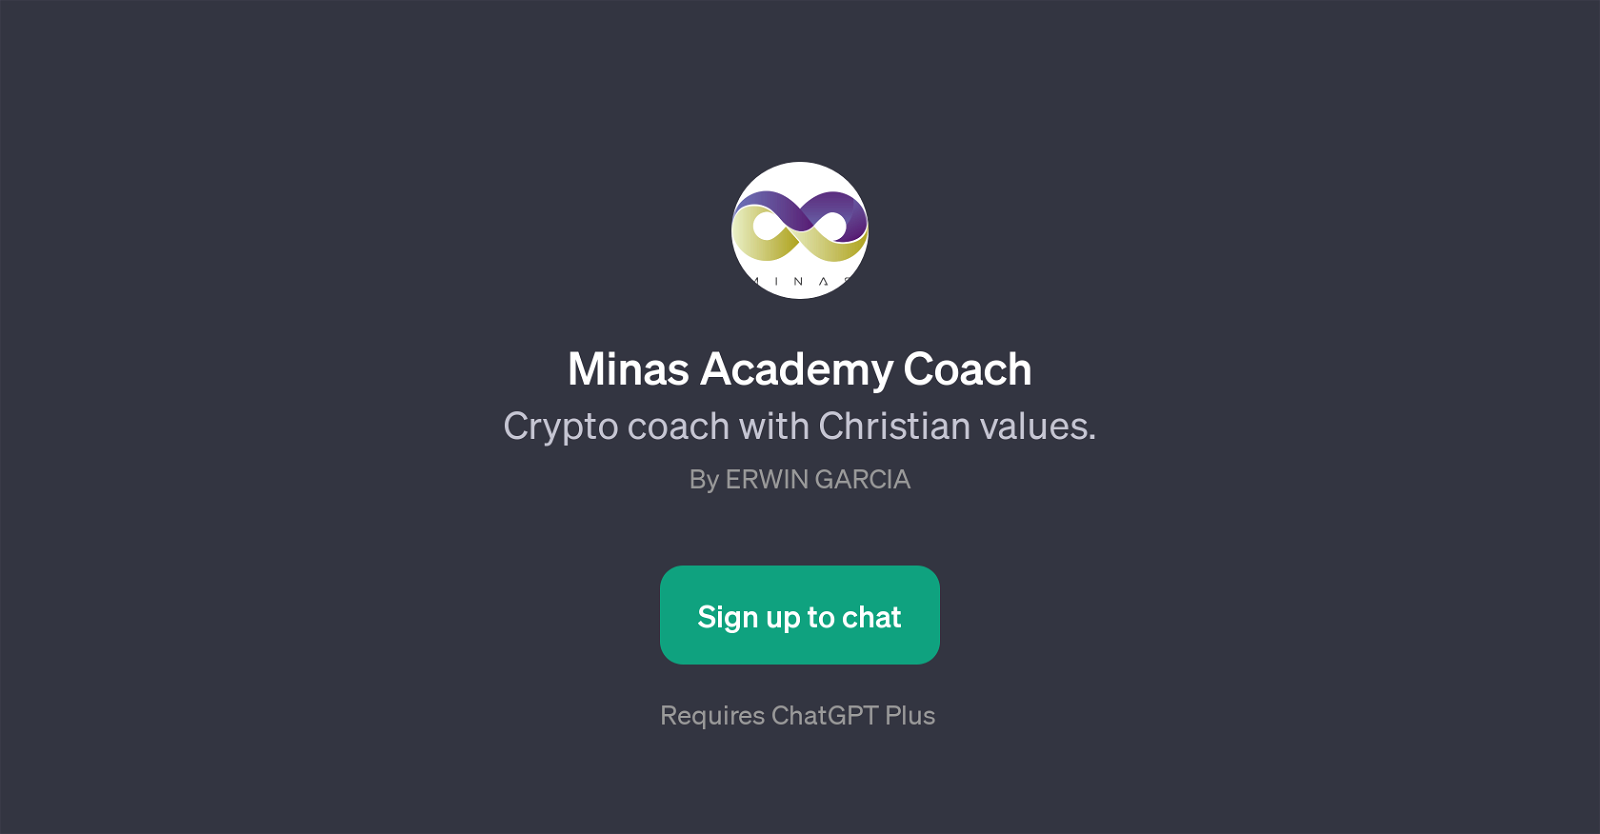 Minas Academy Coach website